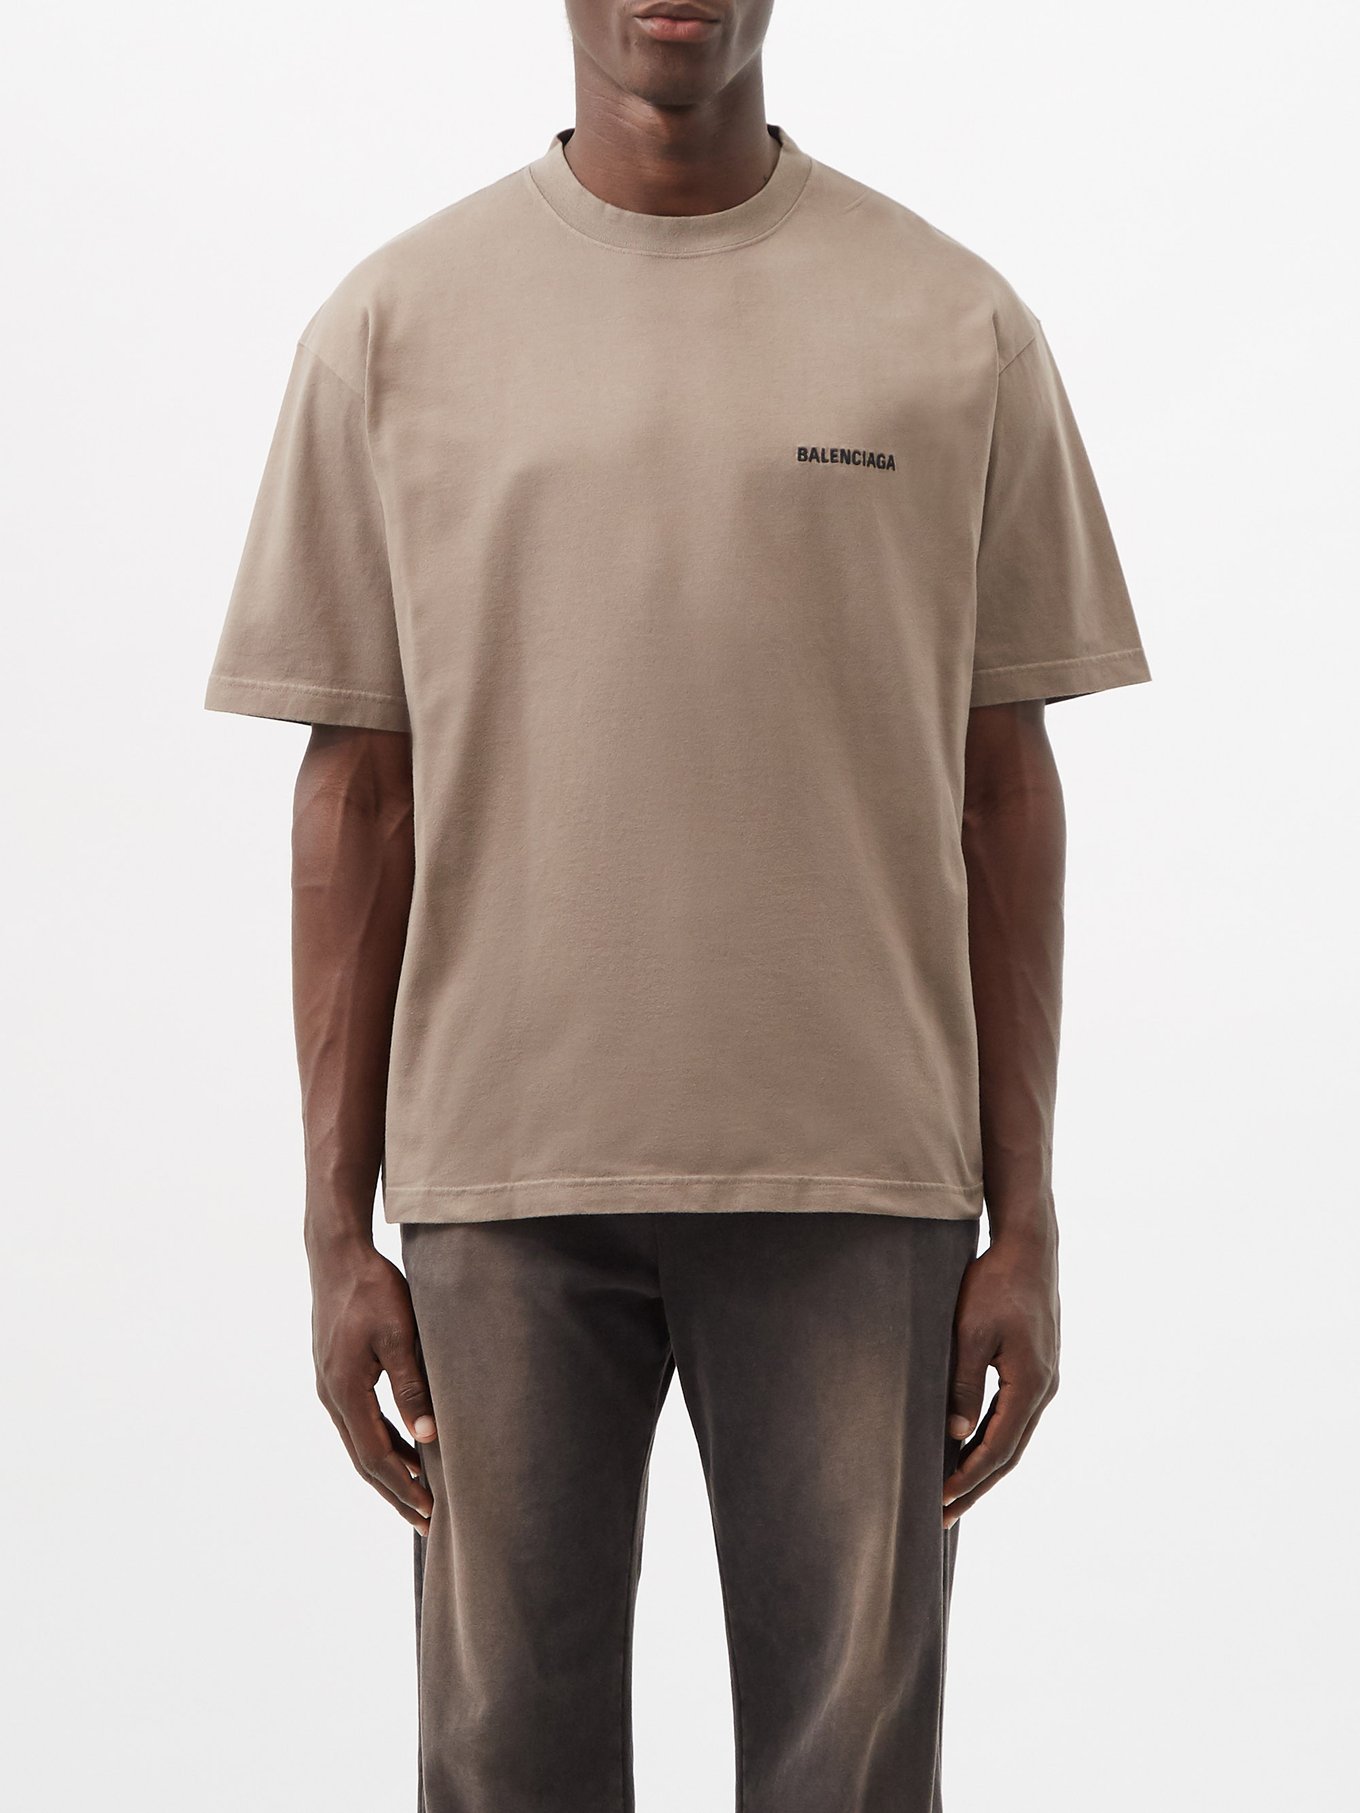 Balenciaga Men's Regular Fit T-Shirt